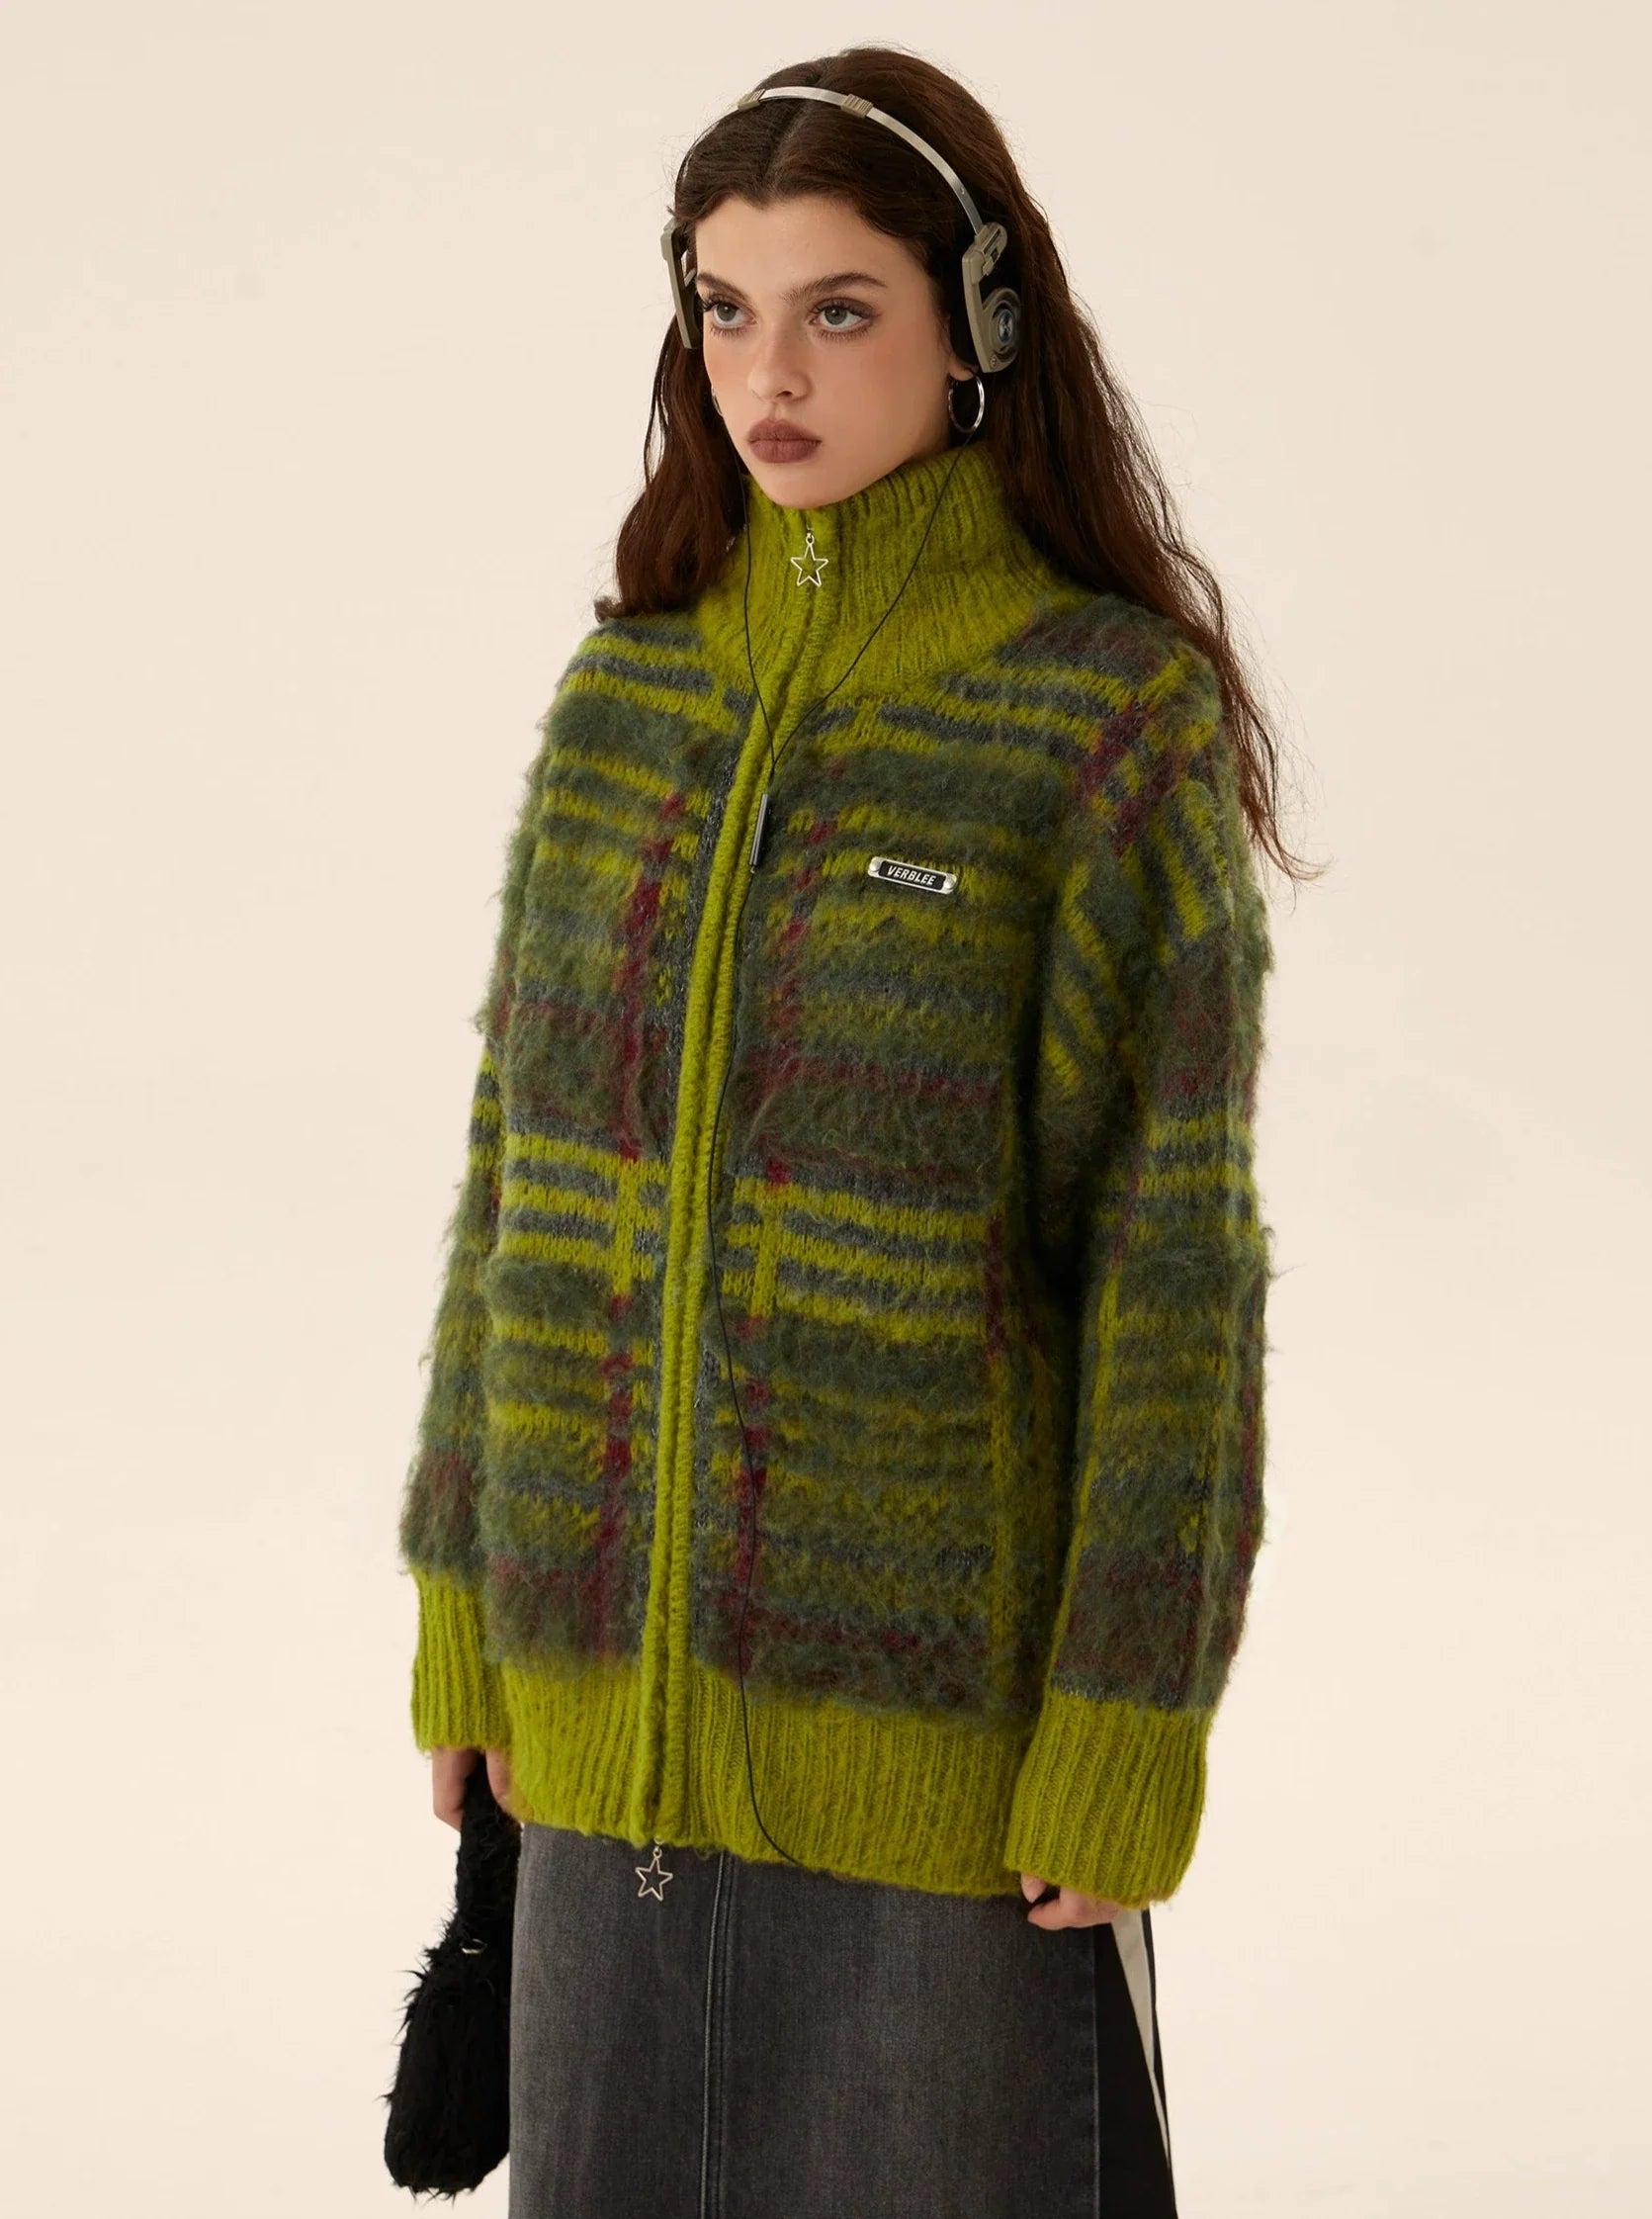 Mohair Knit Zipper Cardigan Sweater Coat